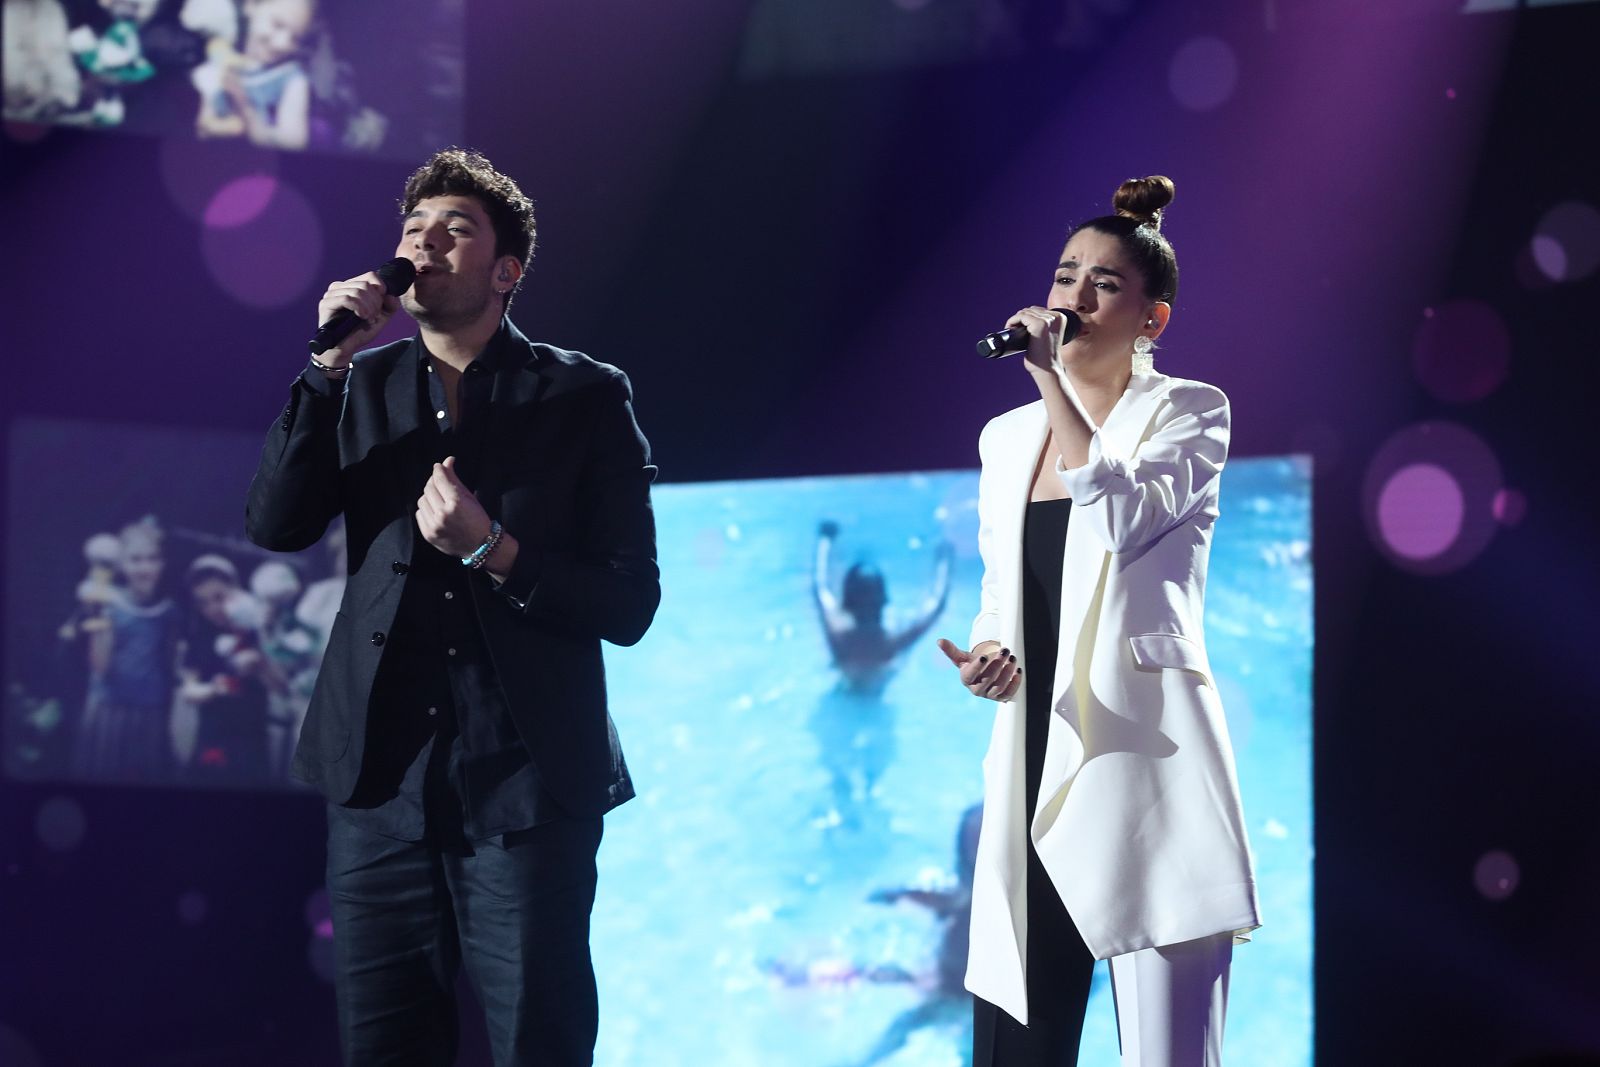 Anajú y Javi cantan "Amor eterno", de Rocío Dúrcal, en la Gala 4 de Operación Triunfo 2020 